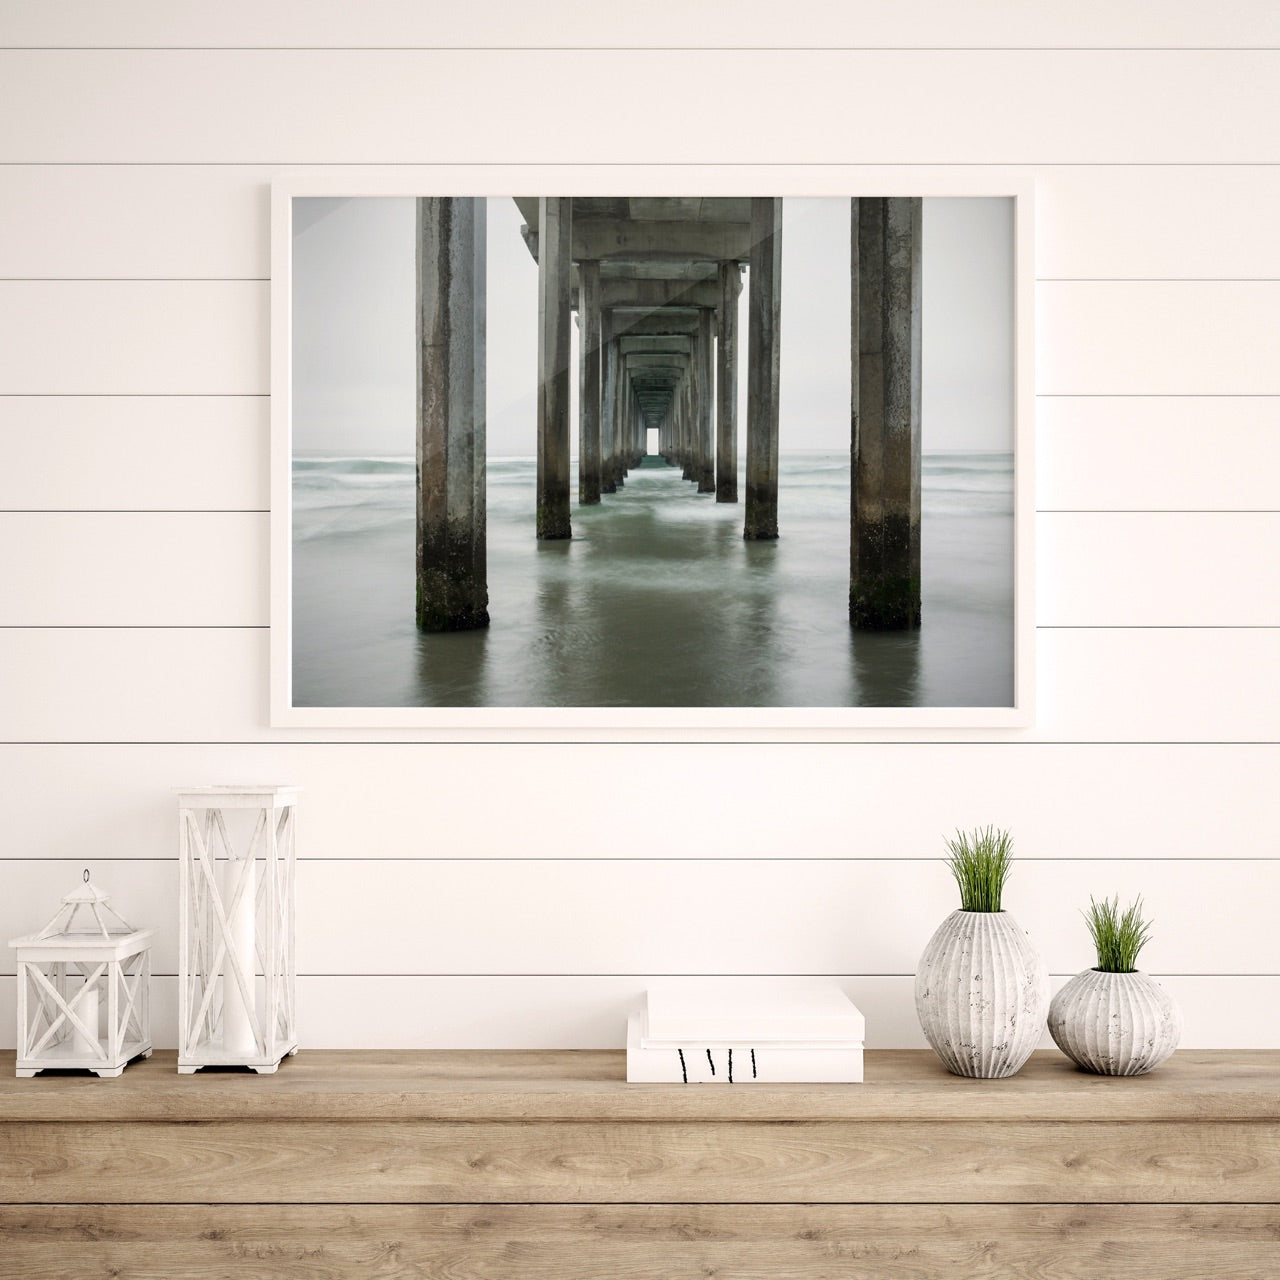 Fine Art Photograph of a pier